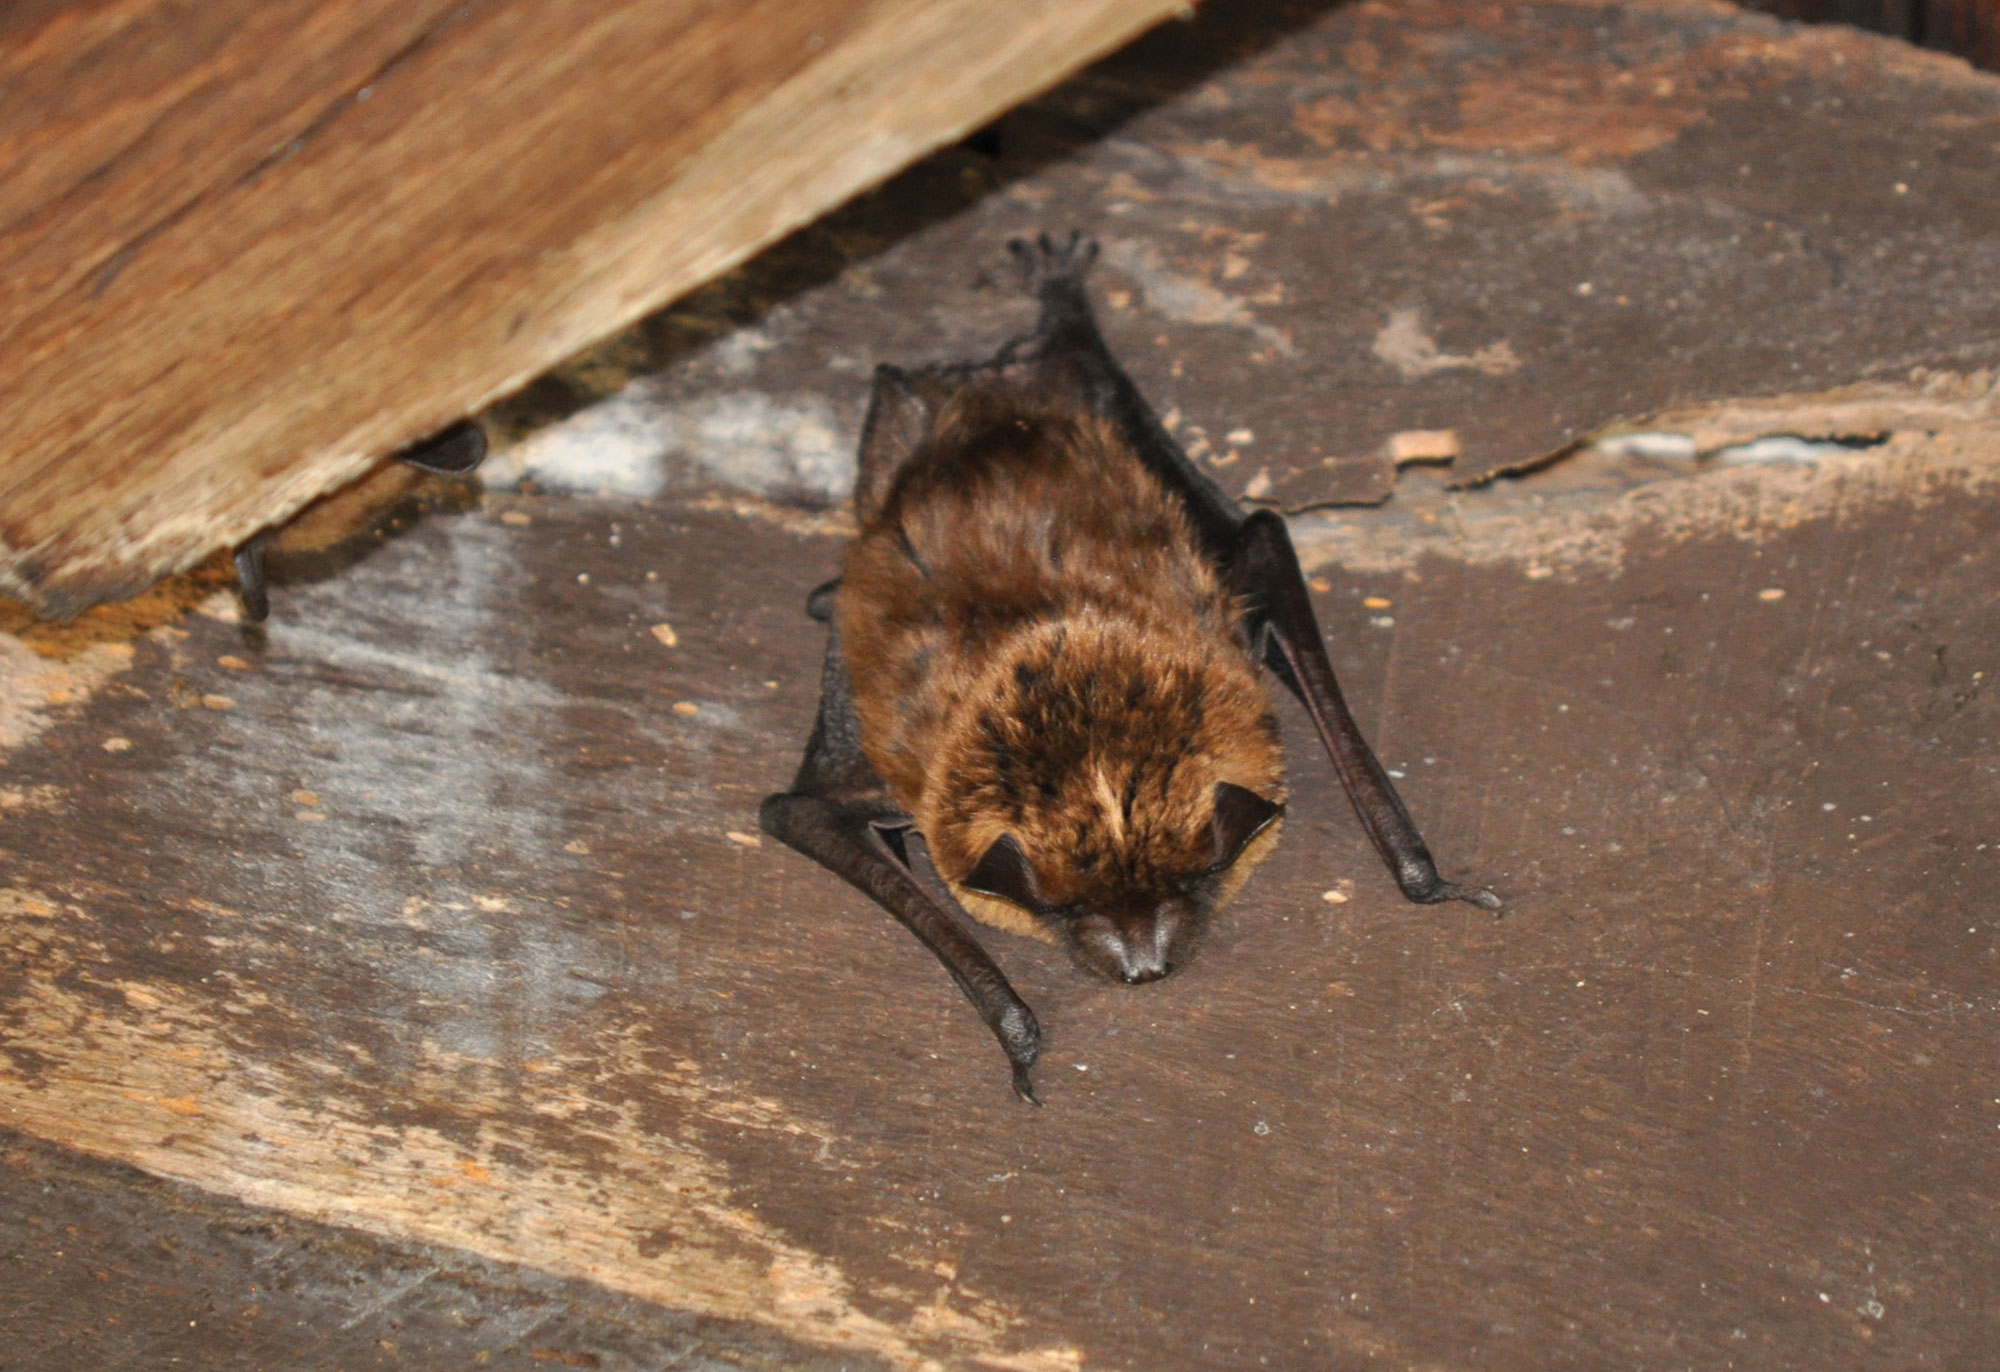 A big brown bat.